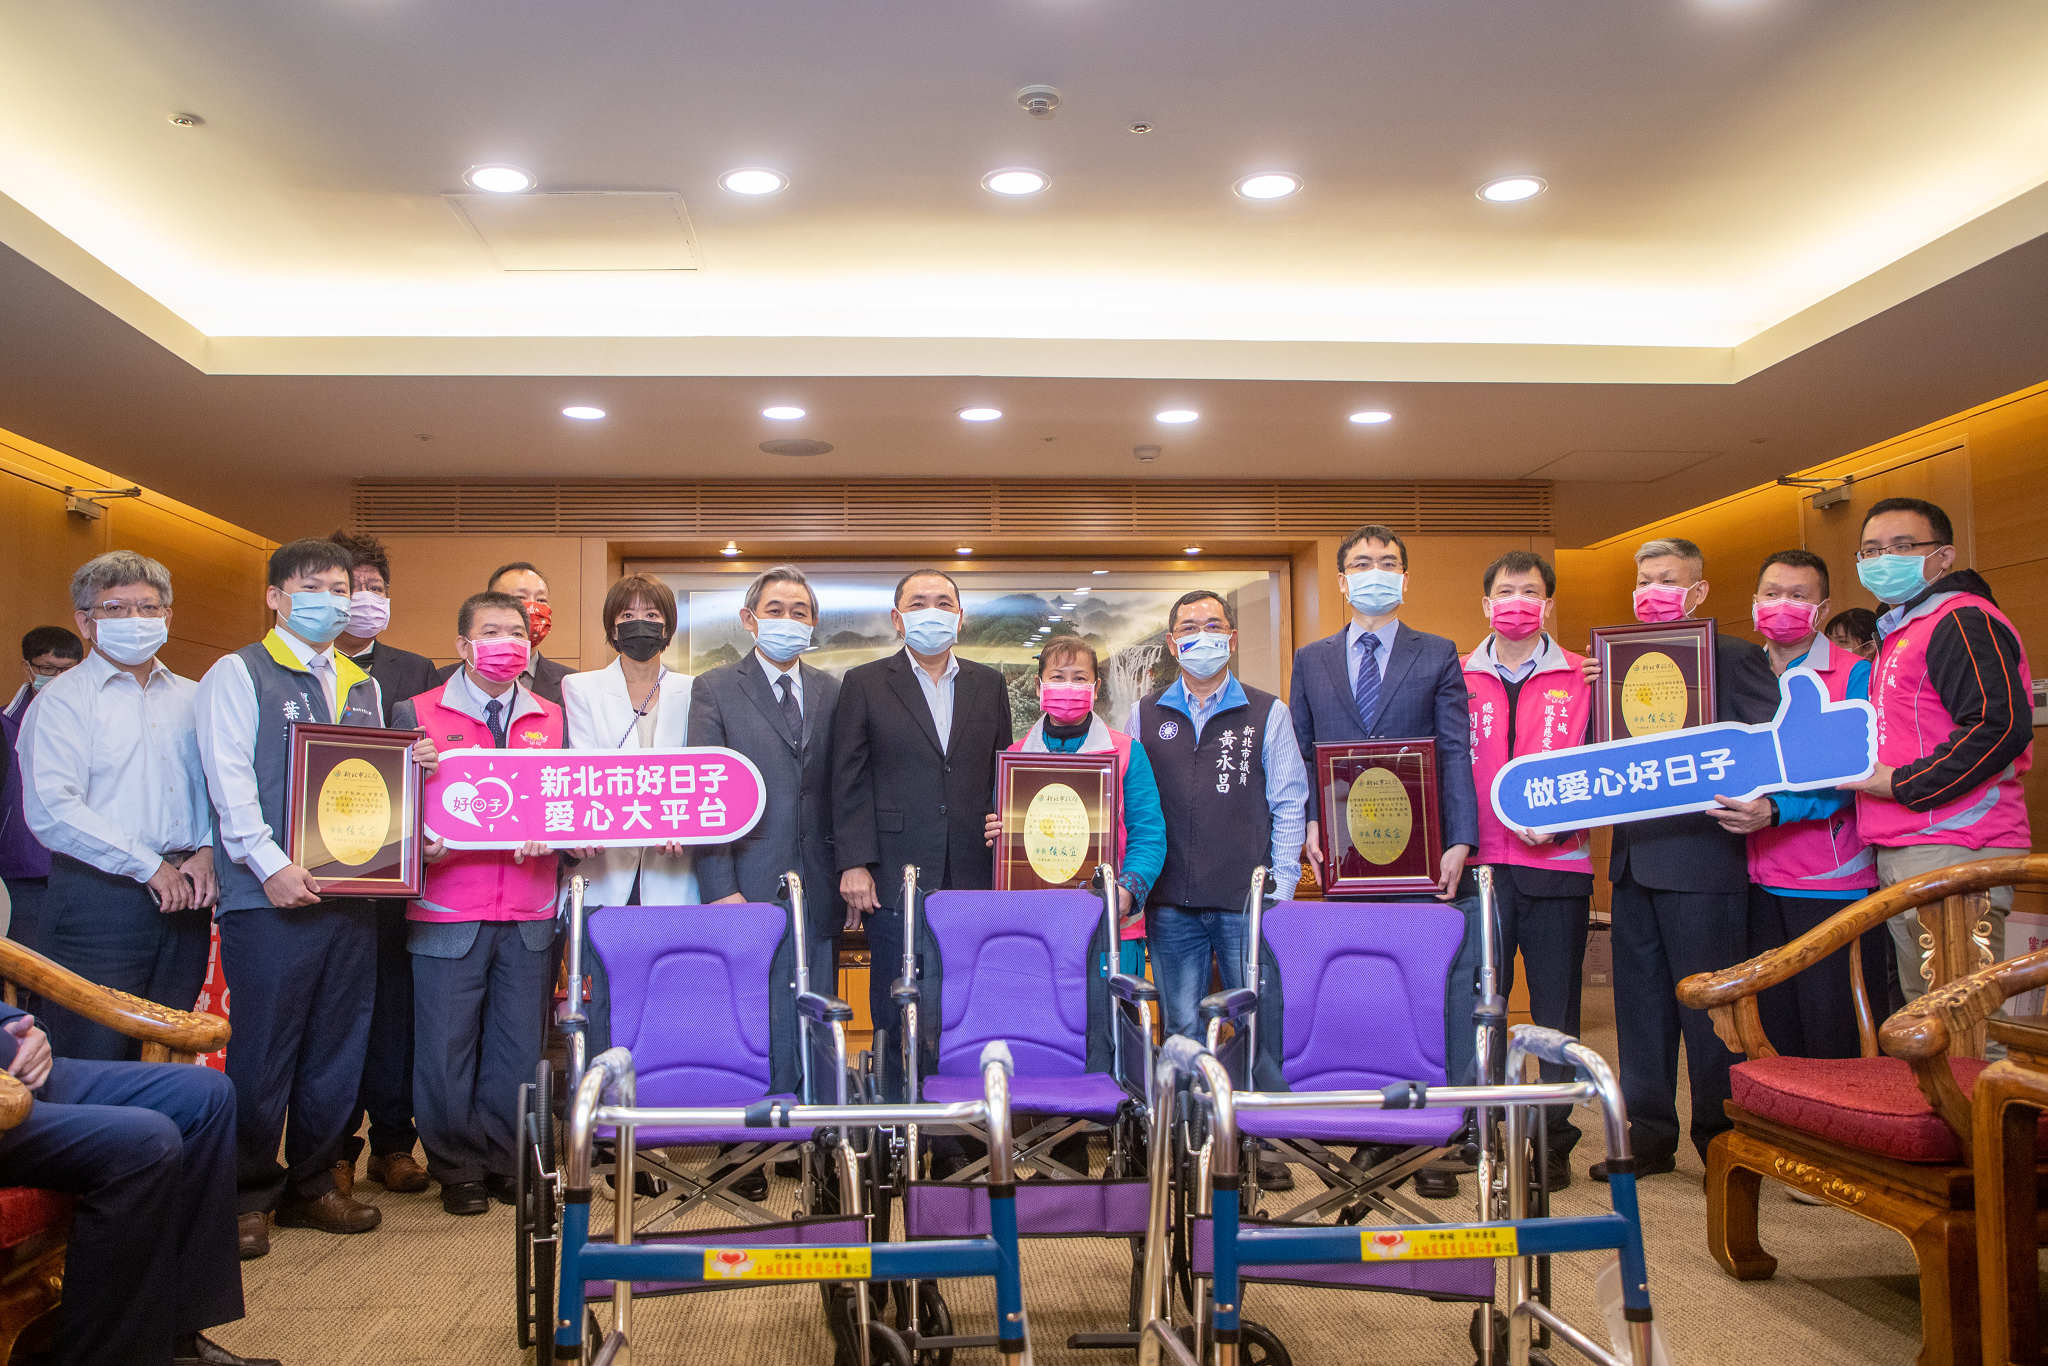 六大團體共同捐贈新北市輪椅150台及助行器65台捐贈儀式